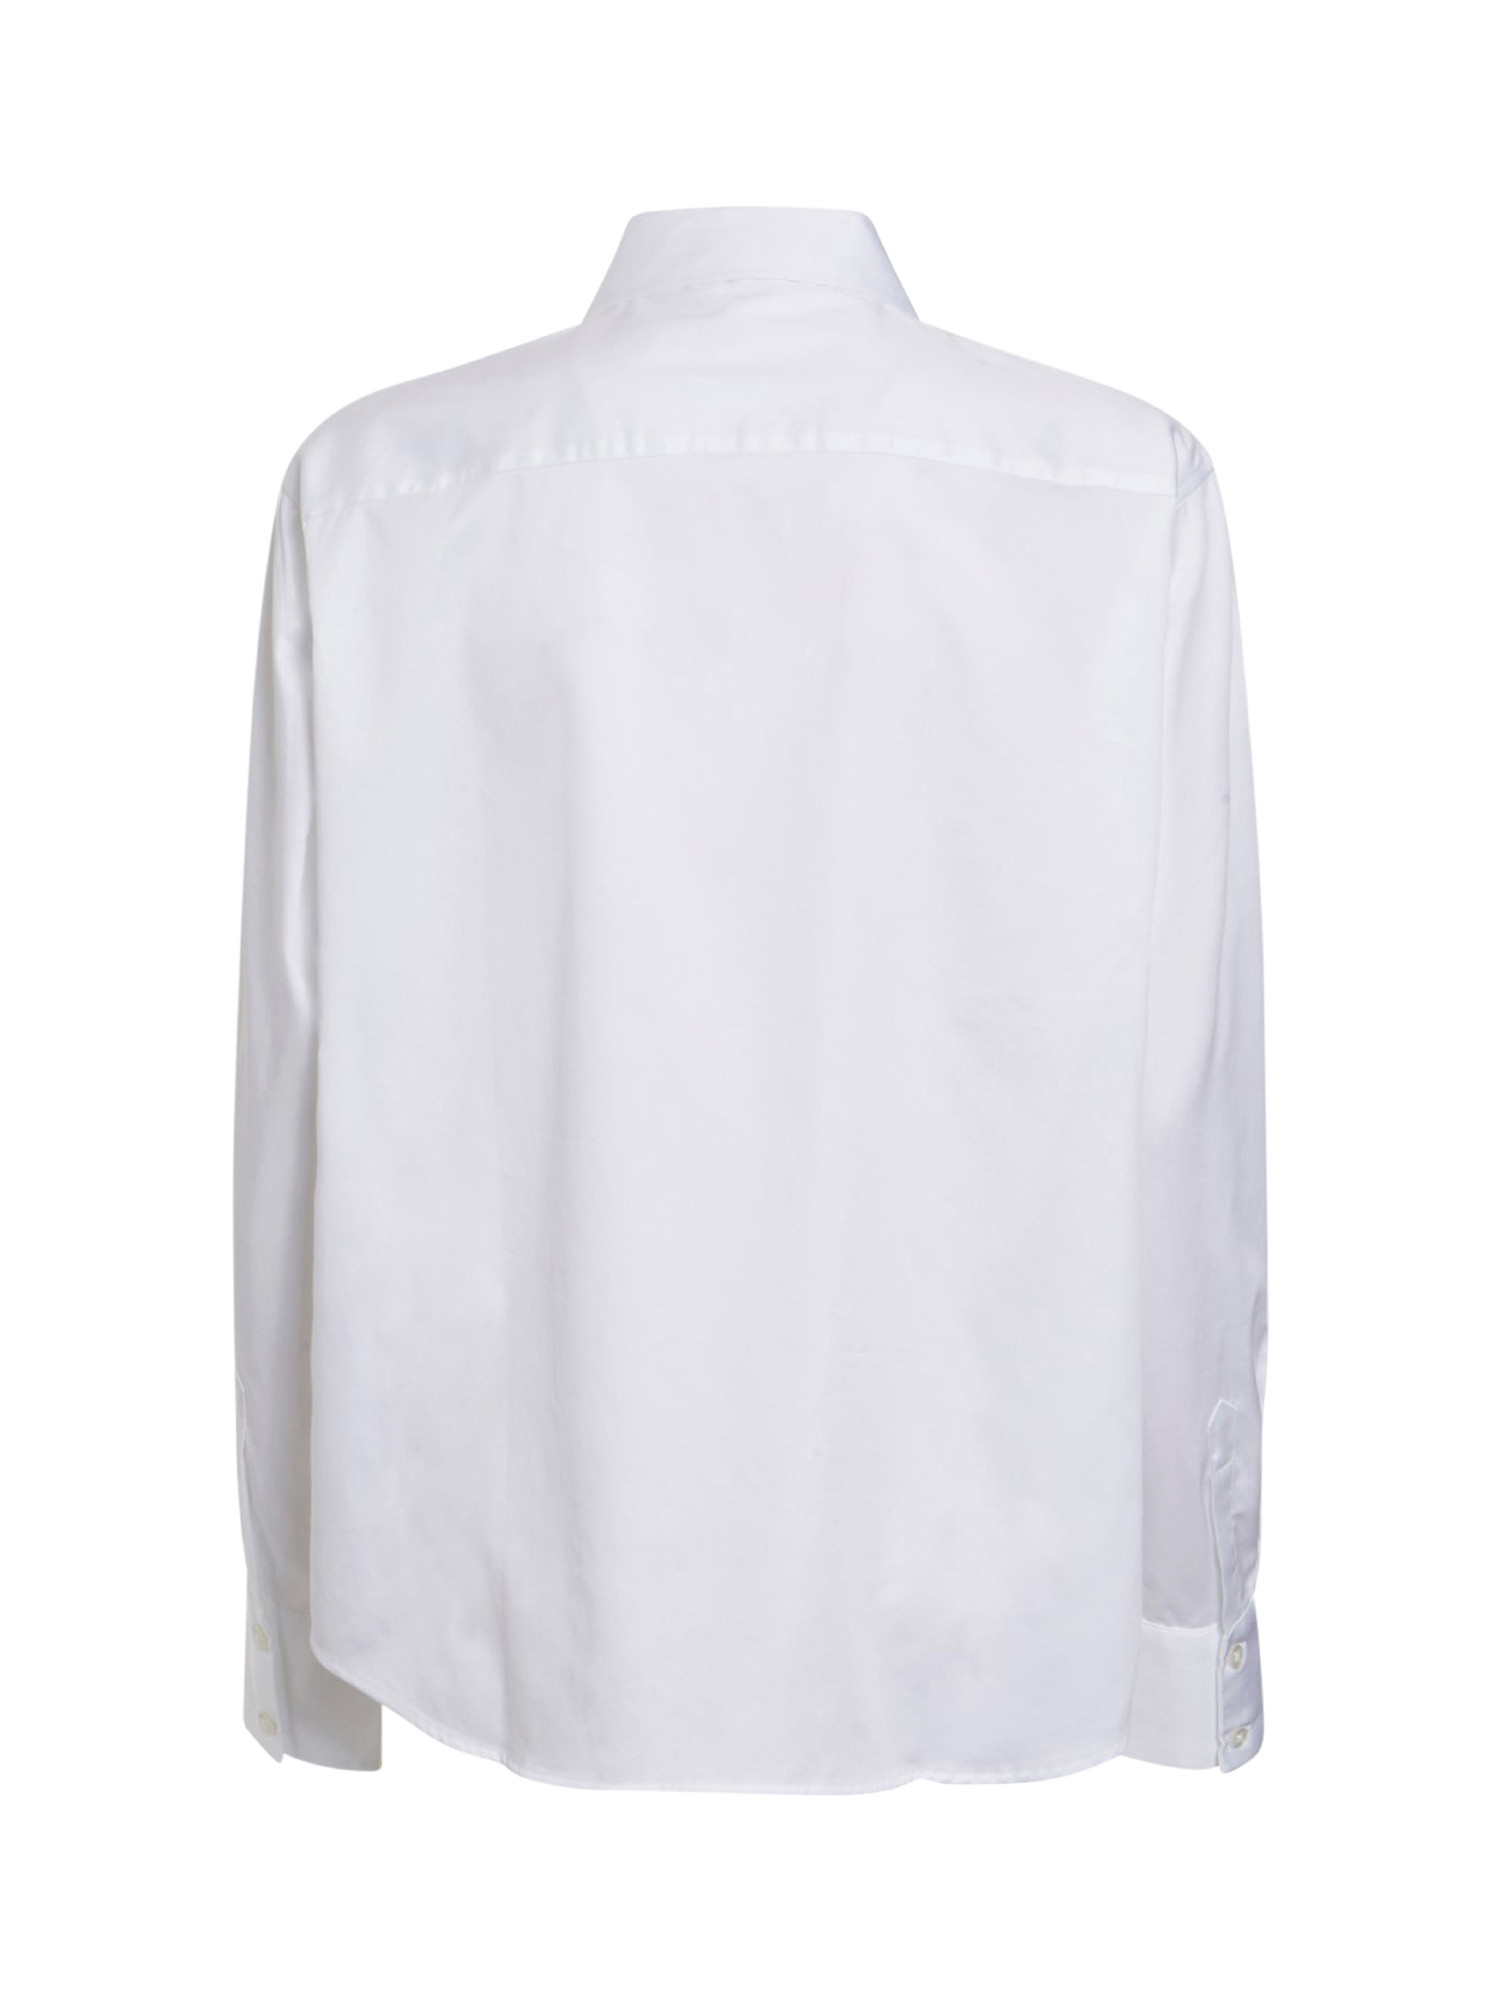 Long sleeve shirt, White, large image number 1